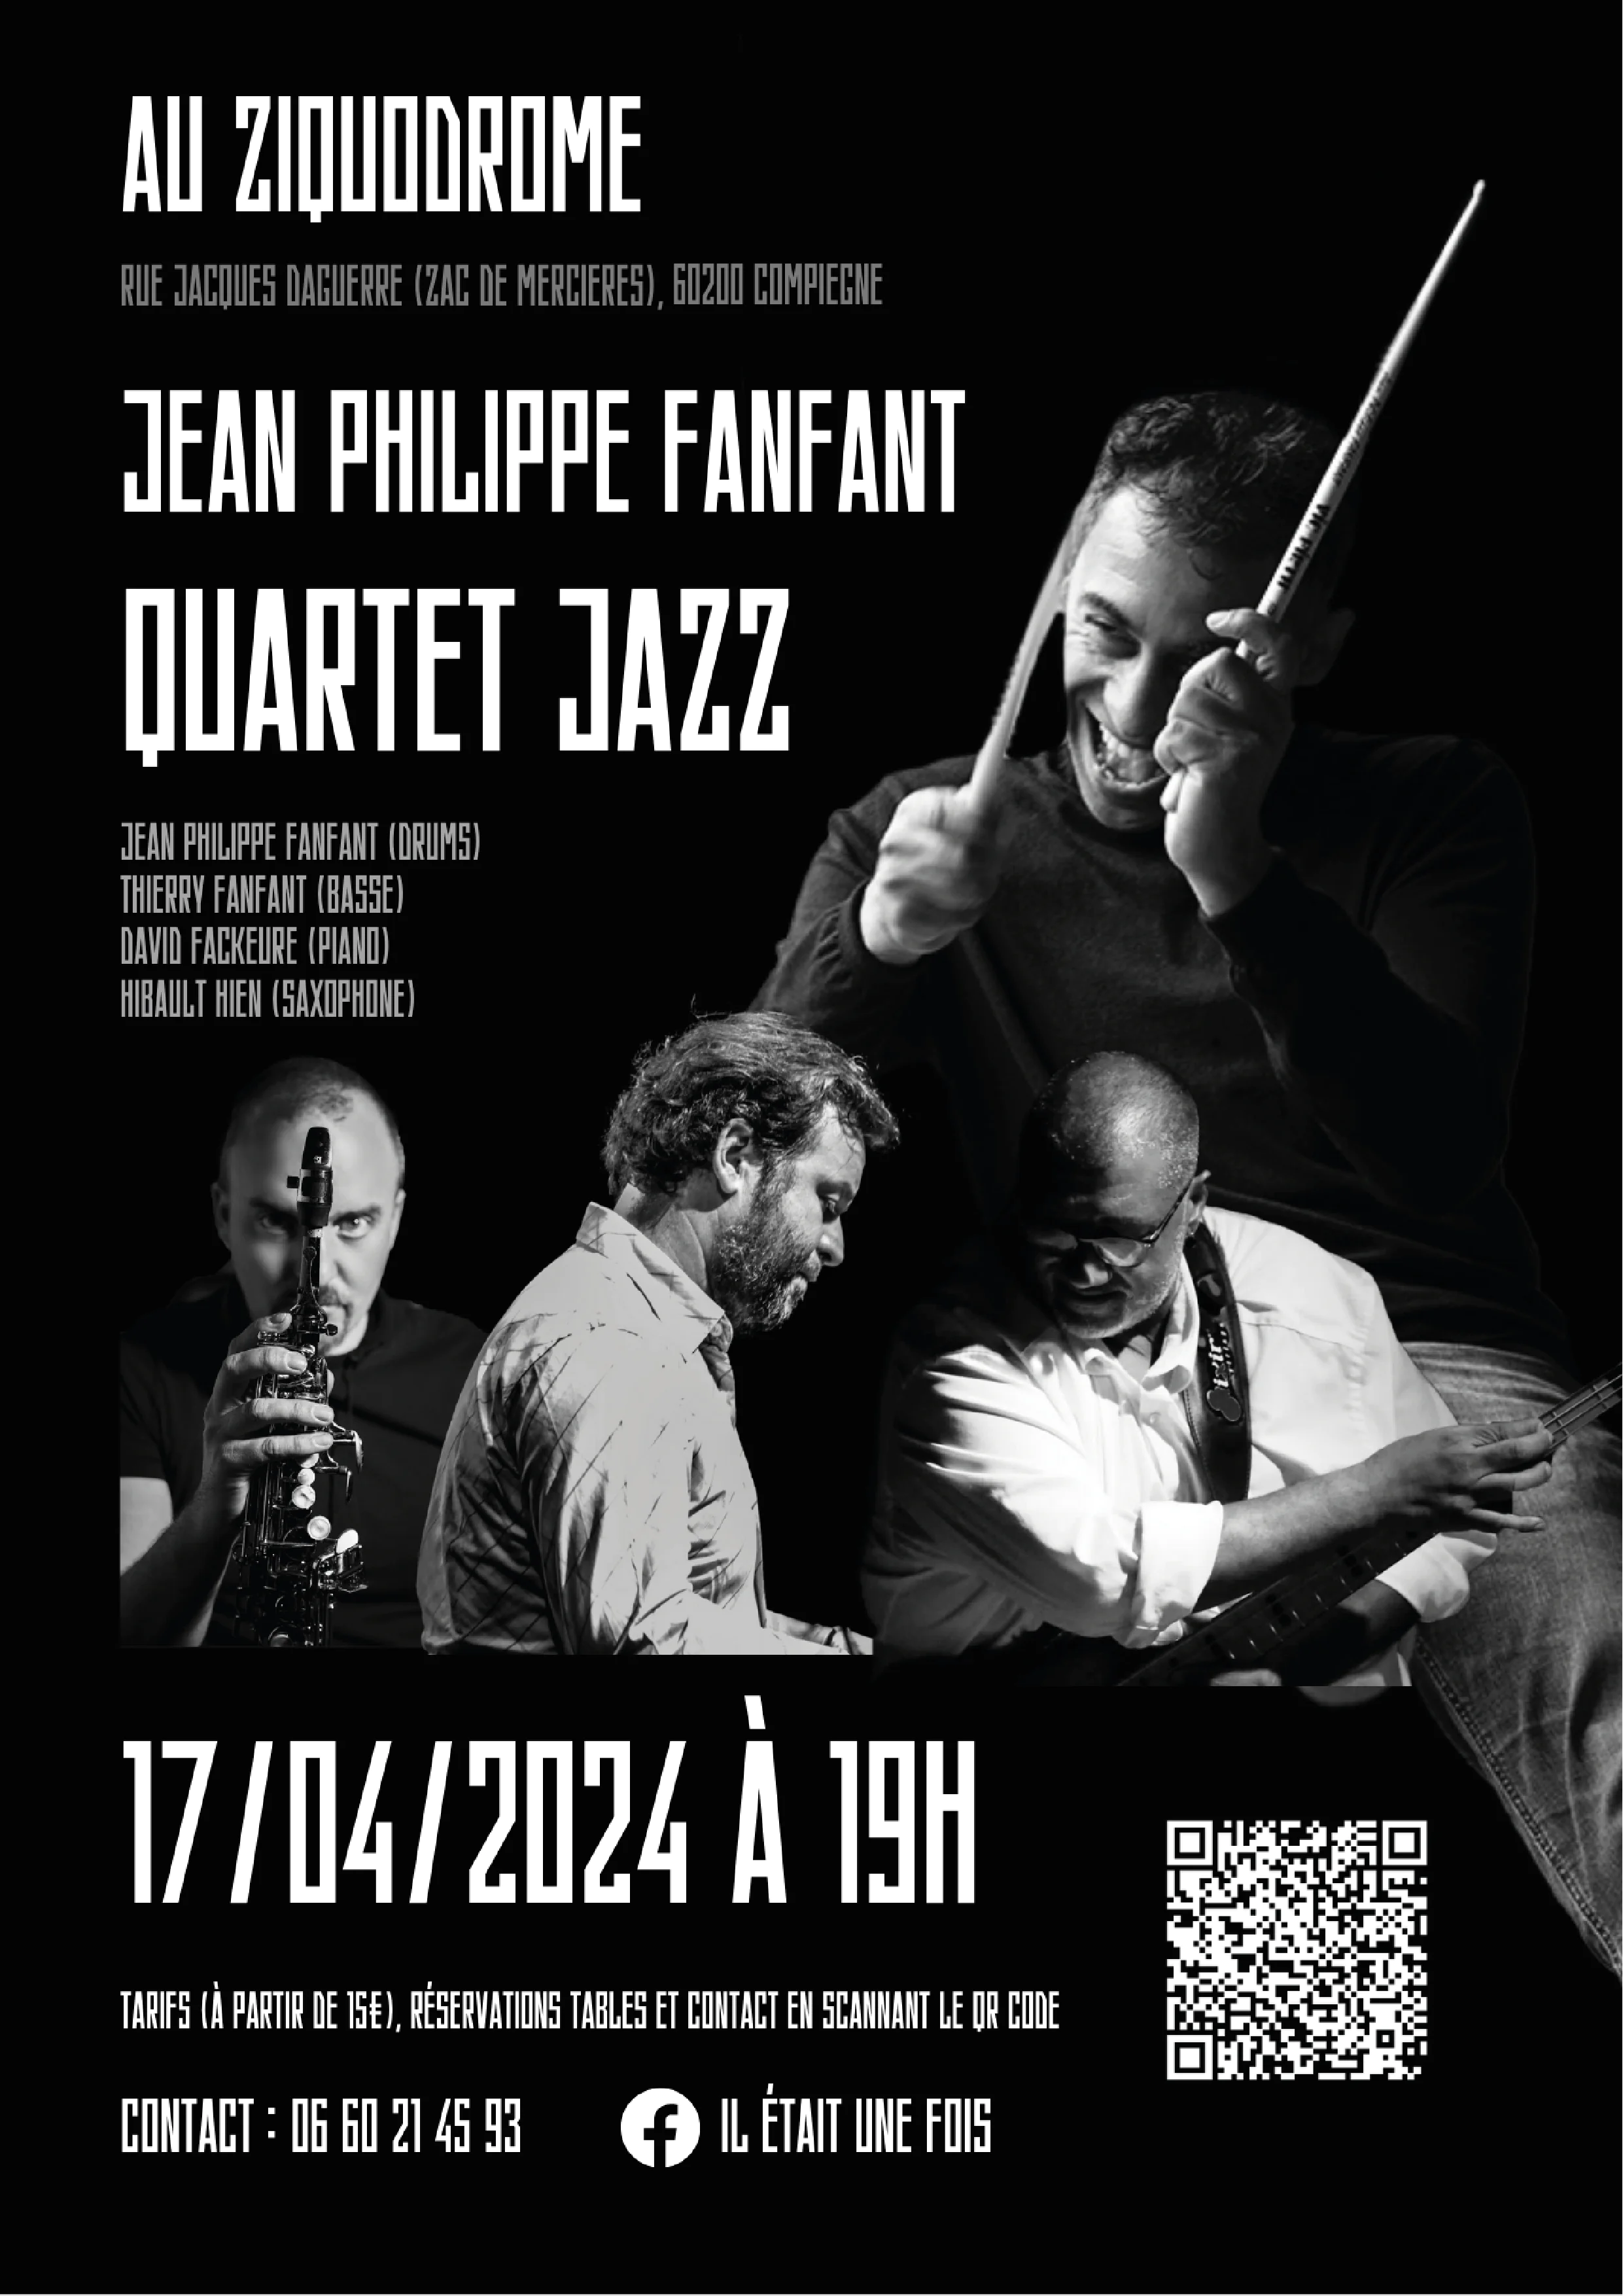 Jean-Philippe Fanfant Quartet "Jazz"